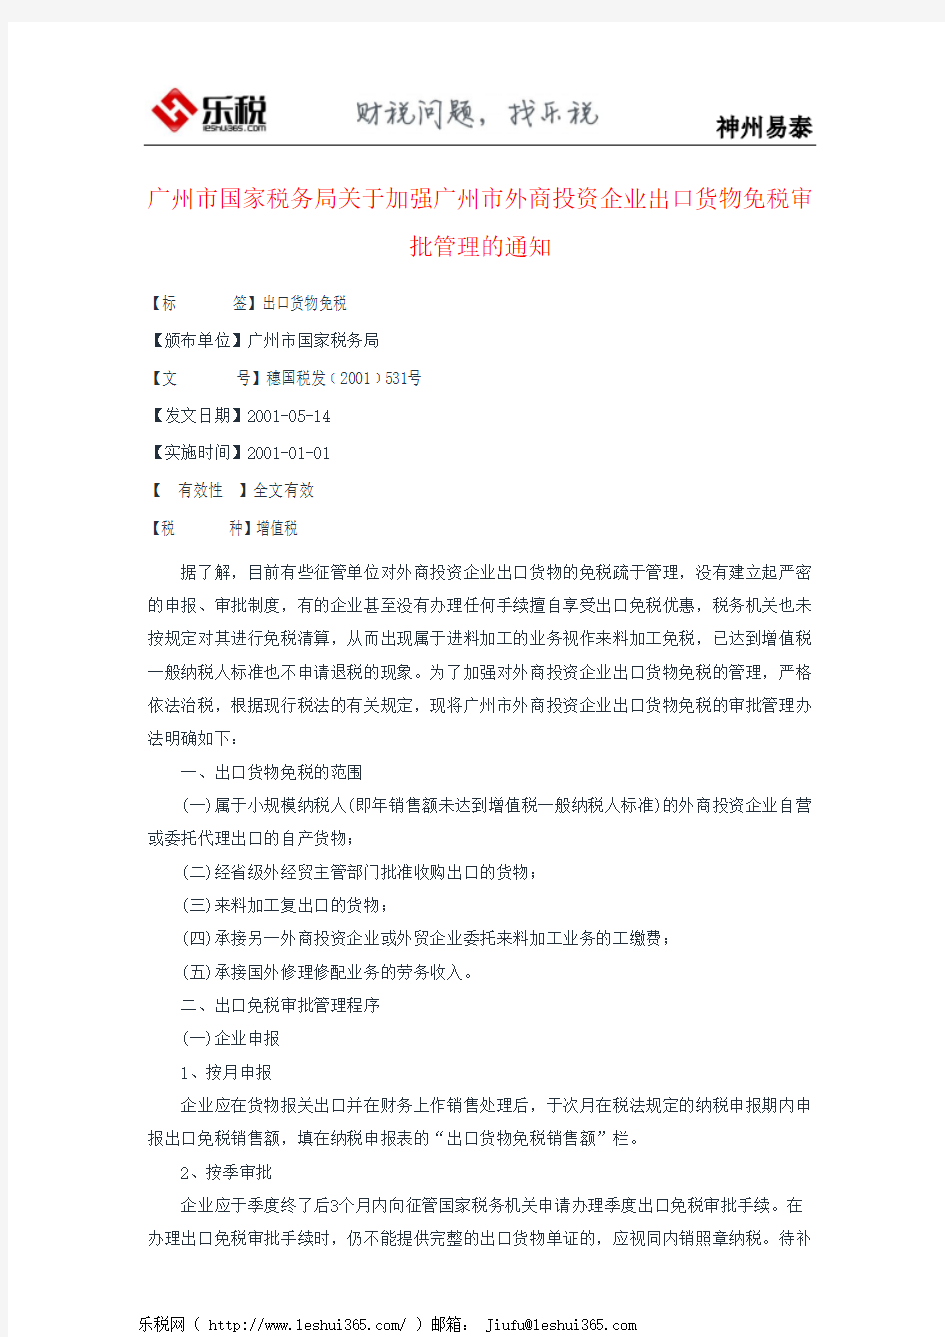 广州市国家税务局关于加强广州市外商投资企业出口货物免税审批管